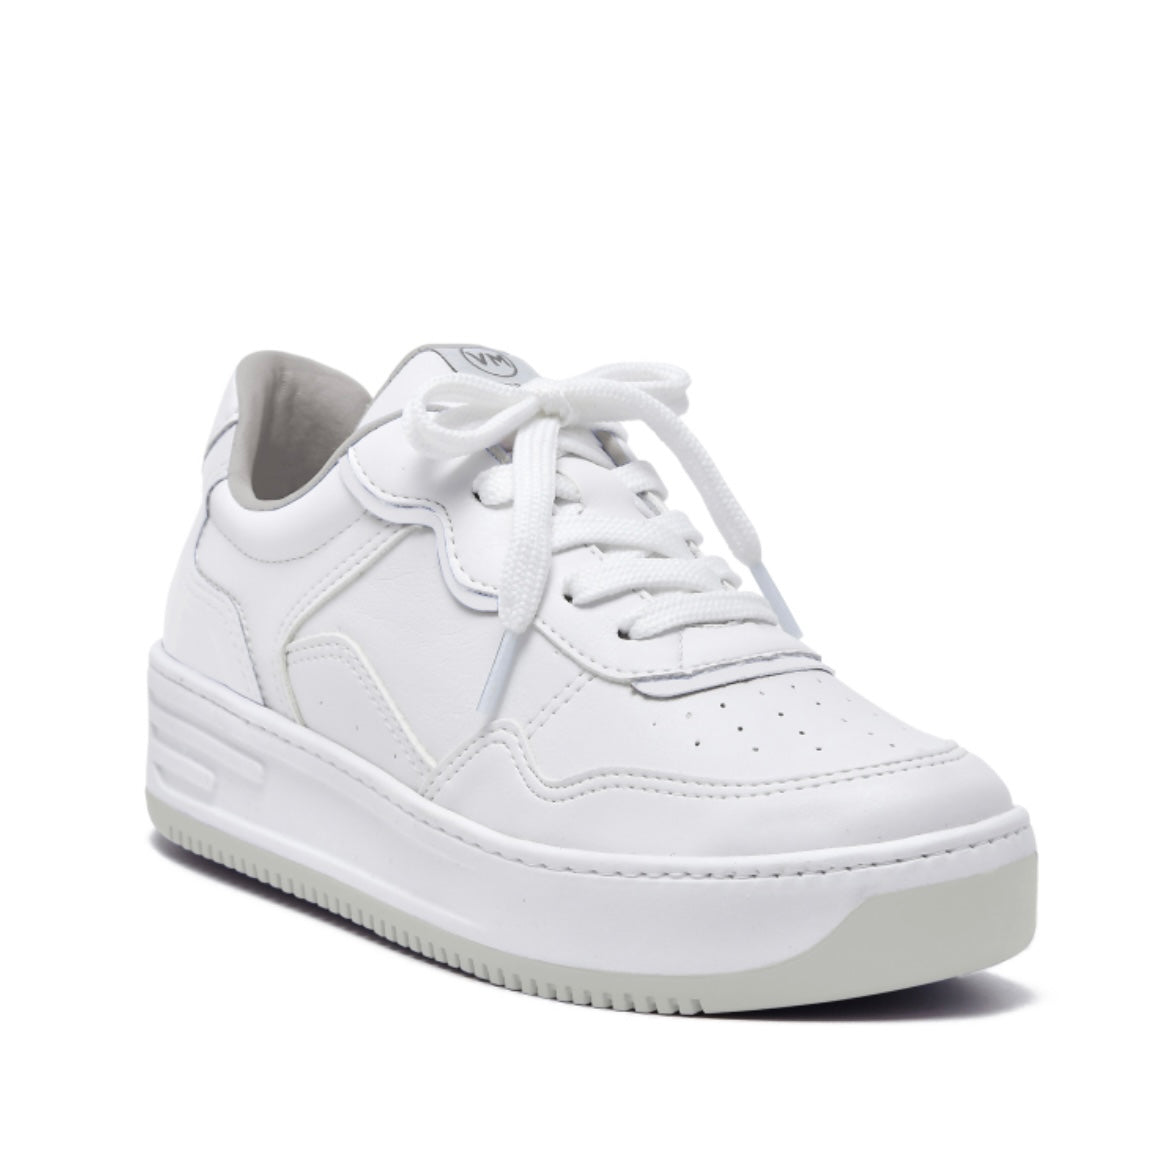 White/ gray sole Classic Sneaker 5701-08